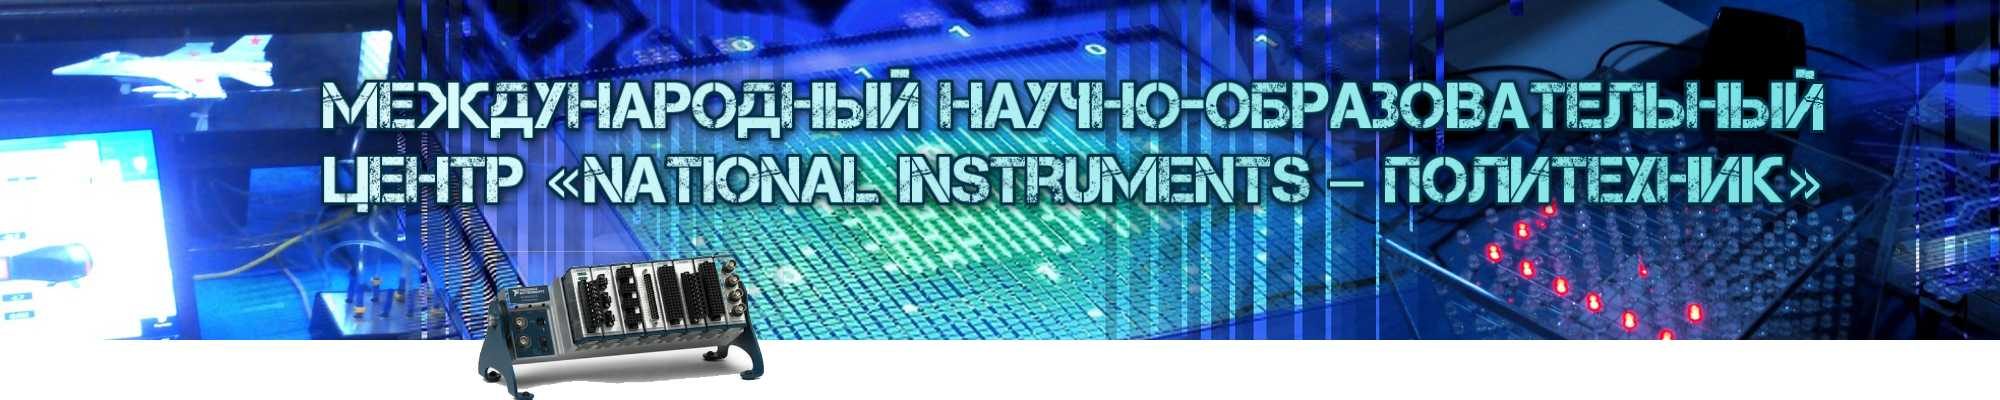 Международный научно-образовательный Центр «National Instruments – Политехник»